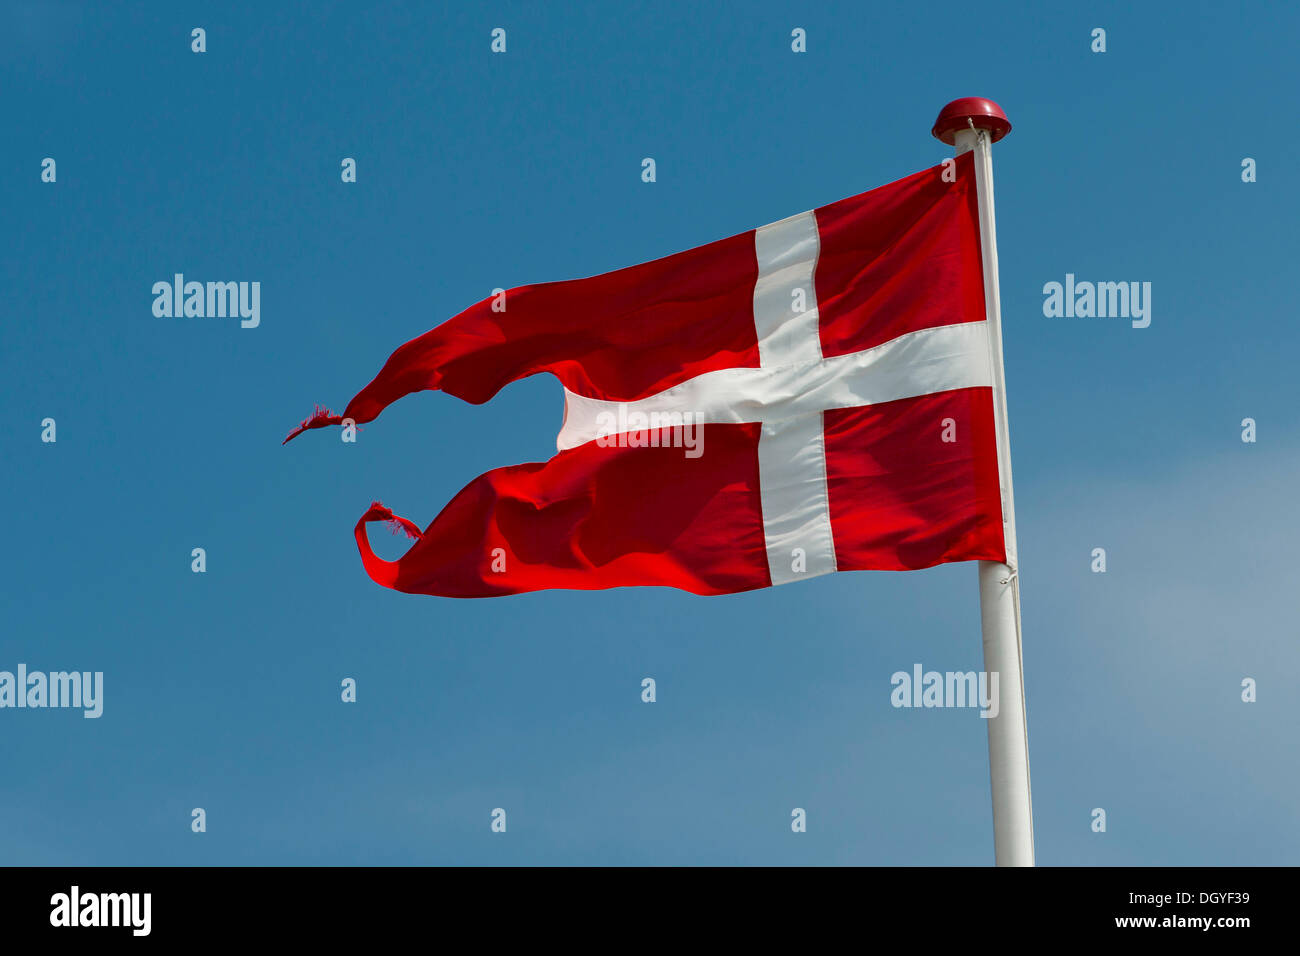 Danish flag or banner, Skagen, Jutland, Denmark Stock Photo